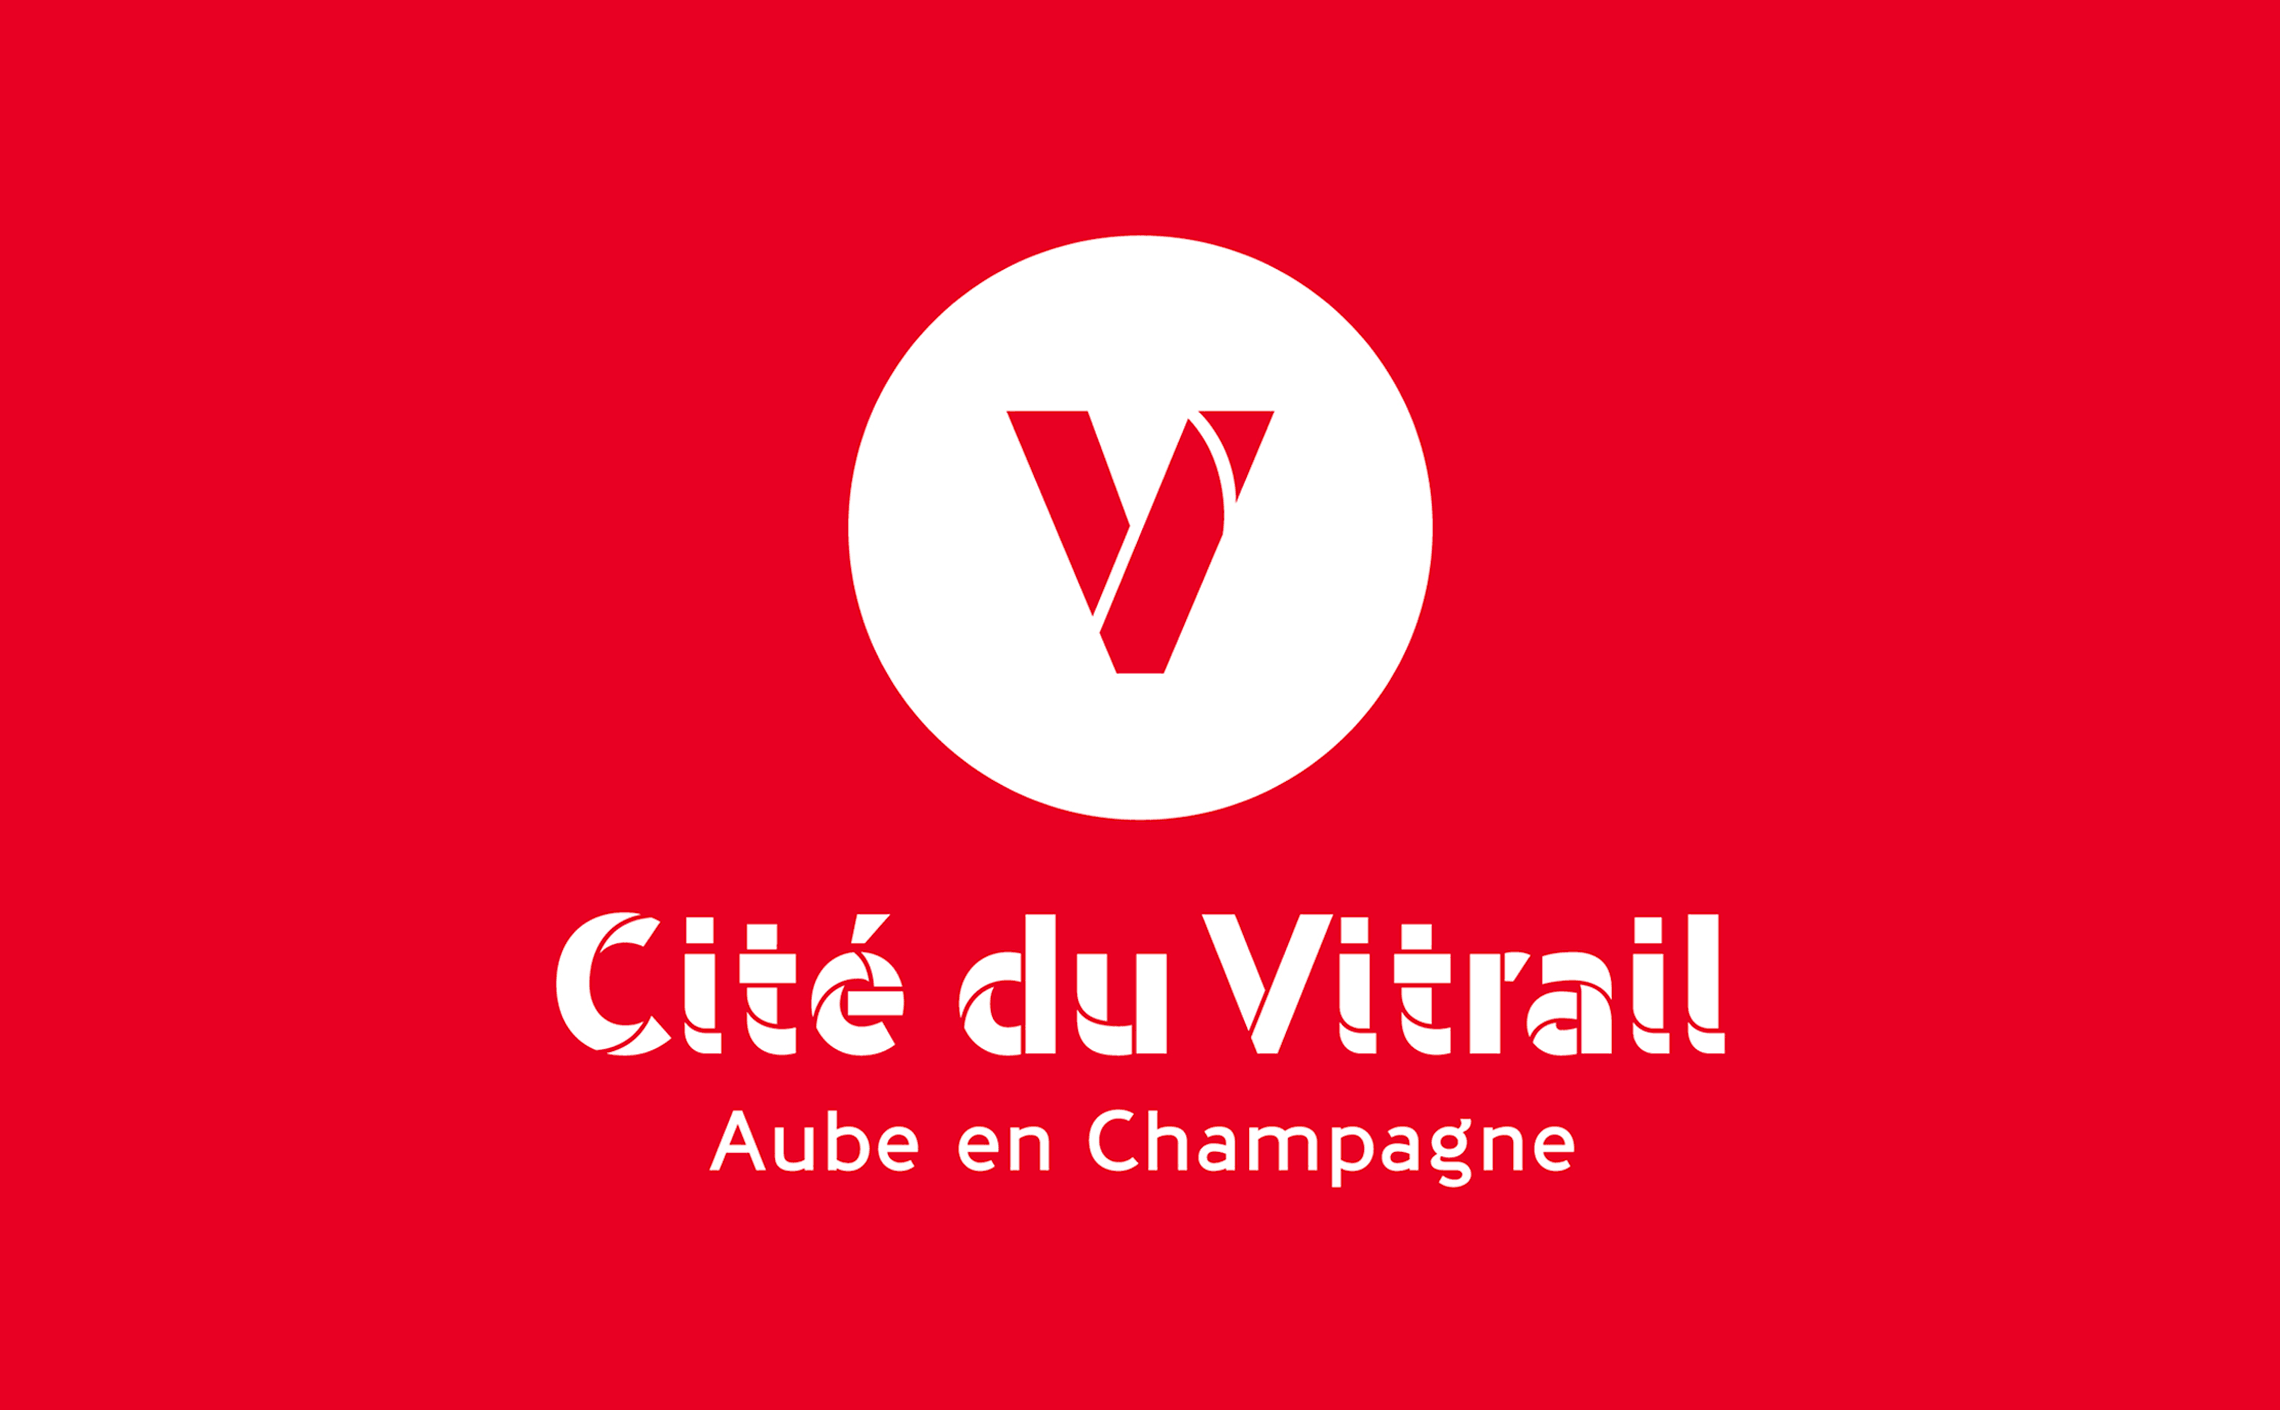 Identité visuelle Cité du Vitrail musée champagne